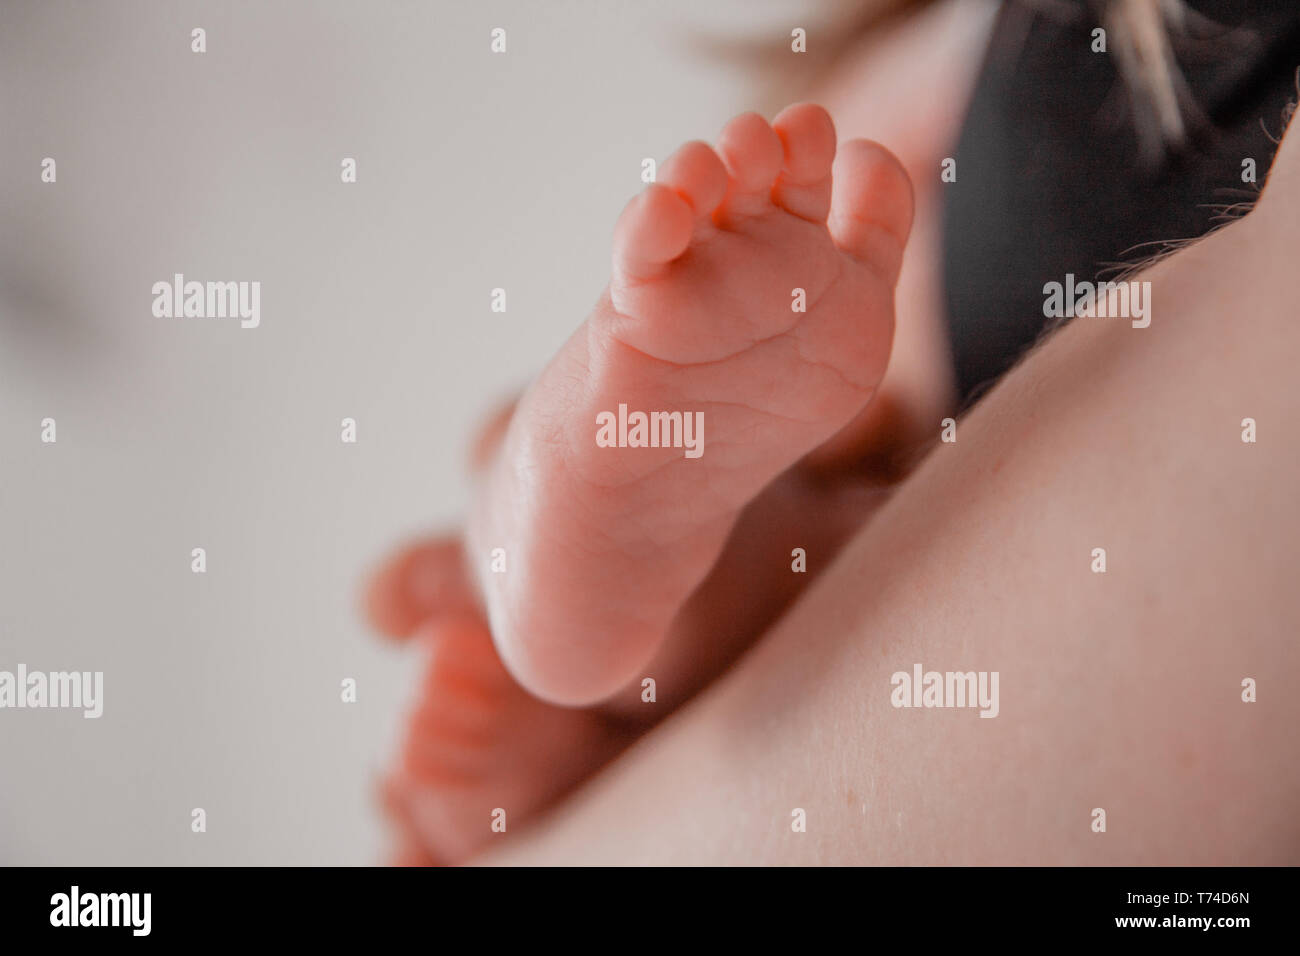 La grossesse, la maternité, la préparation et l'attente de la maternité, l'accouchement concept. Bébé nouveau-né pieds libre dans les mains des parents Banque D'Images